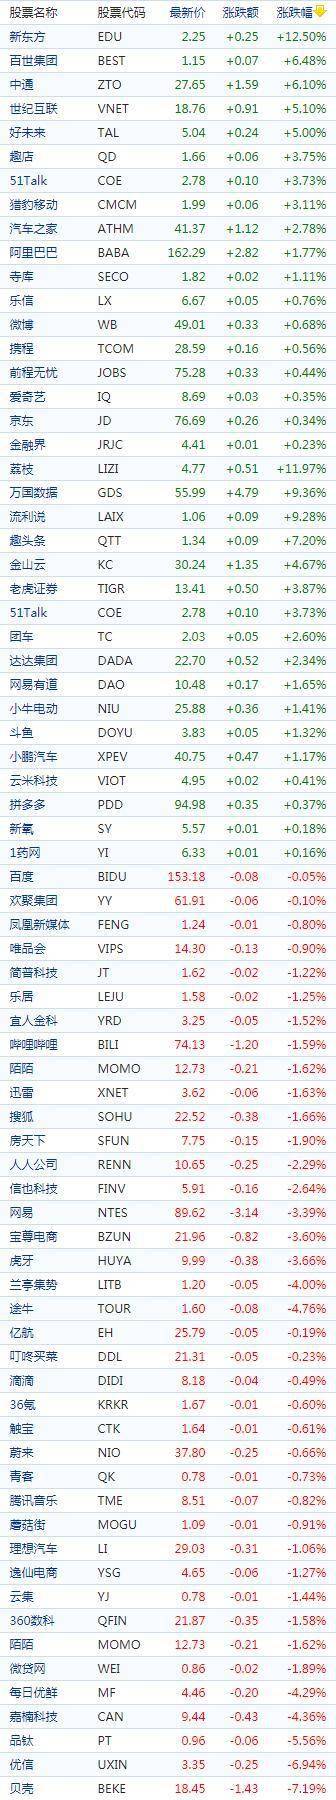 中国概念股周一收盘涨跌互现 高途、新东方涨超12%